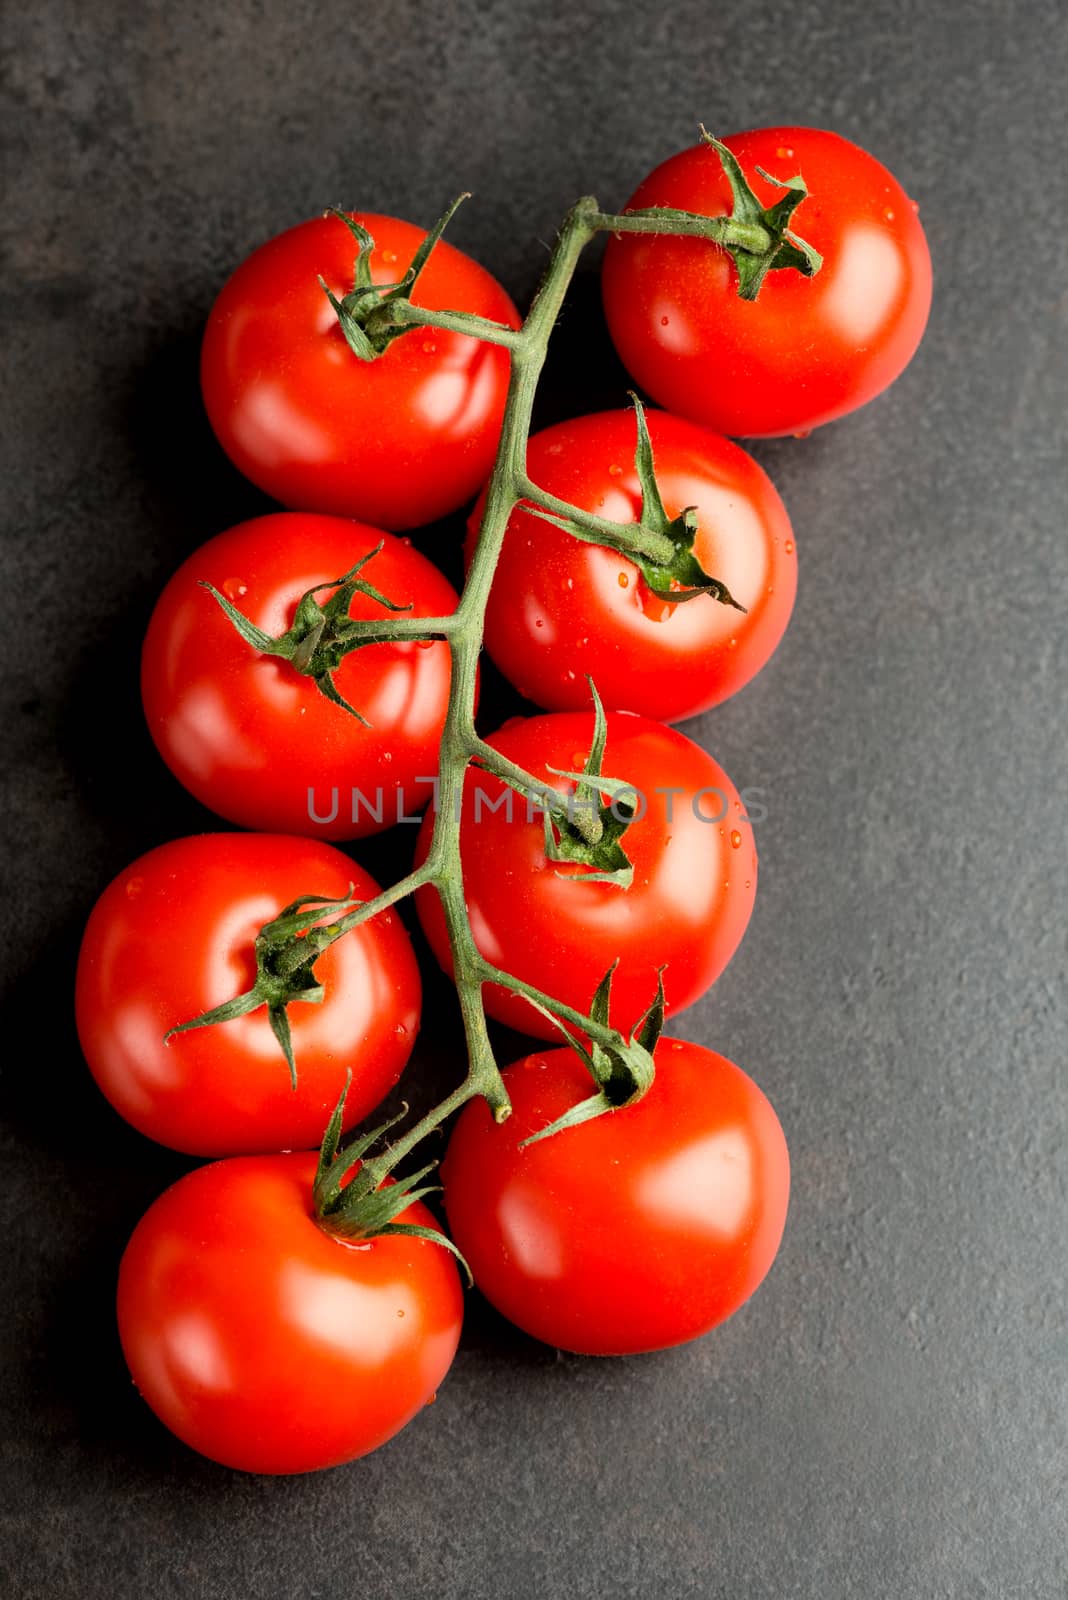 Tomatoes on dark by Nanisimova